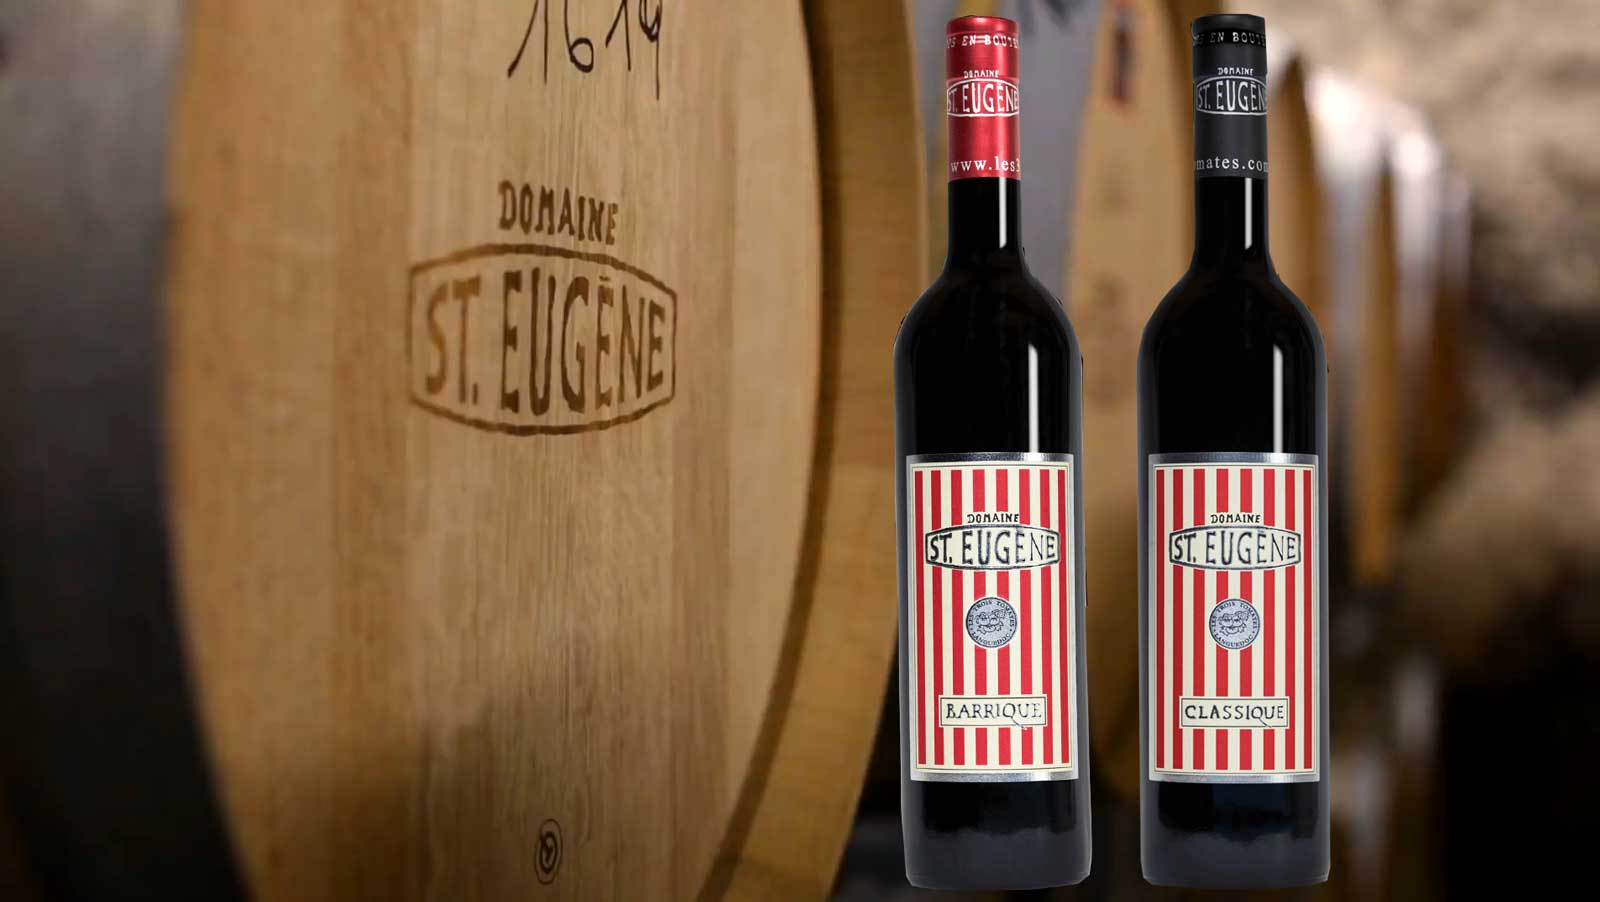 Anggur Prancis - Languedoc-Roussillon - St Domaine de St-Eugene kami adalah kilang anggur yang bangkit kembali dengan sejarah lebih dari 2.000 tahun. Lokasinya sangat indah dan tenang di tengah kebun anggur Languedoc-Roussillon di Prancis selatan. Jika Anda mencari relaksasi dan alam, Anda bisa menghabiskan liburan Anda bersama kami dalam suasana pribadi.